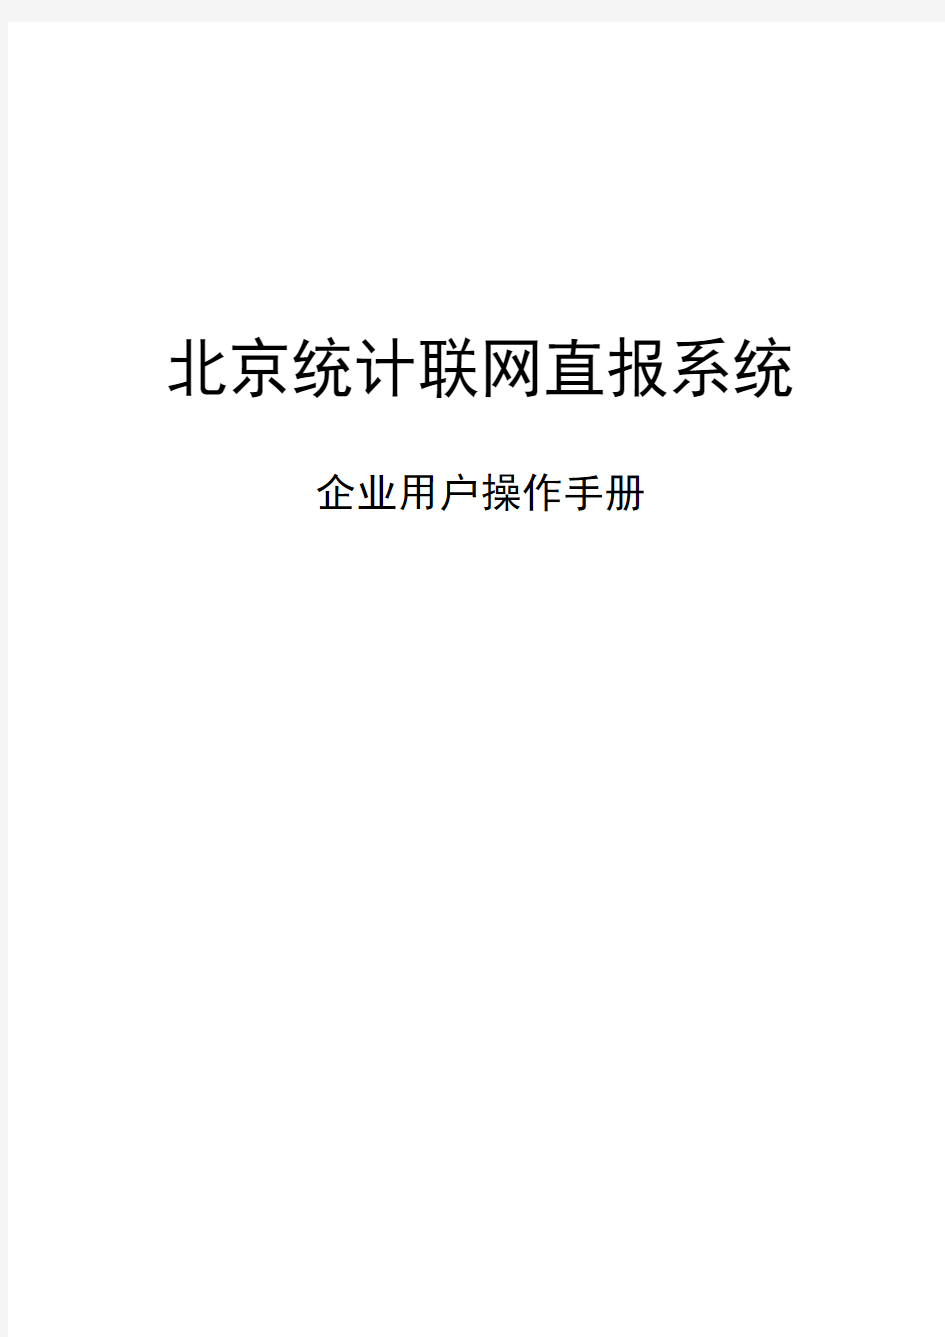 北京统计联网直报系统企业用户操作手册(2019)